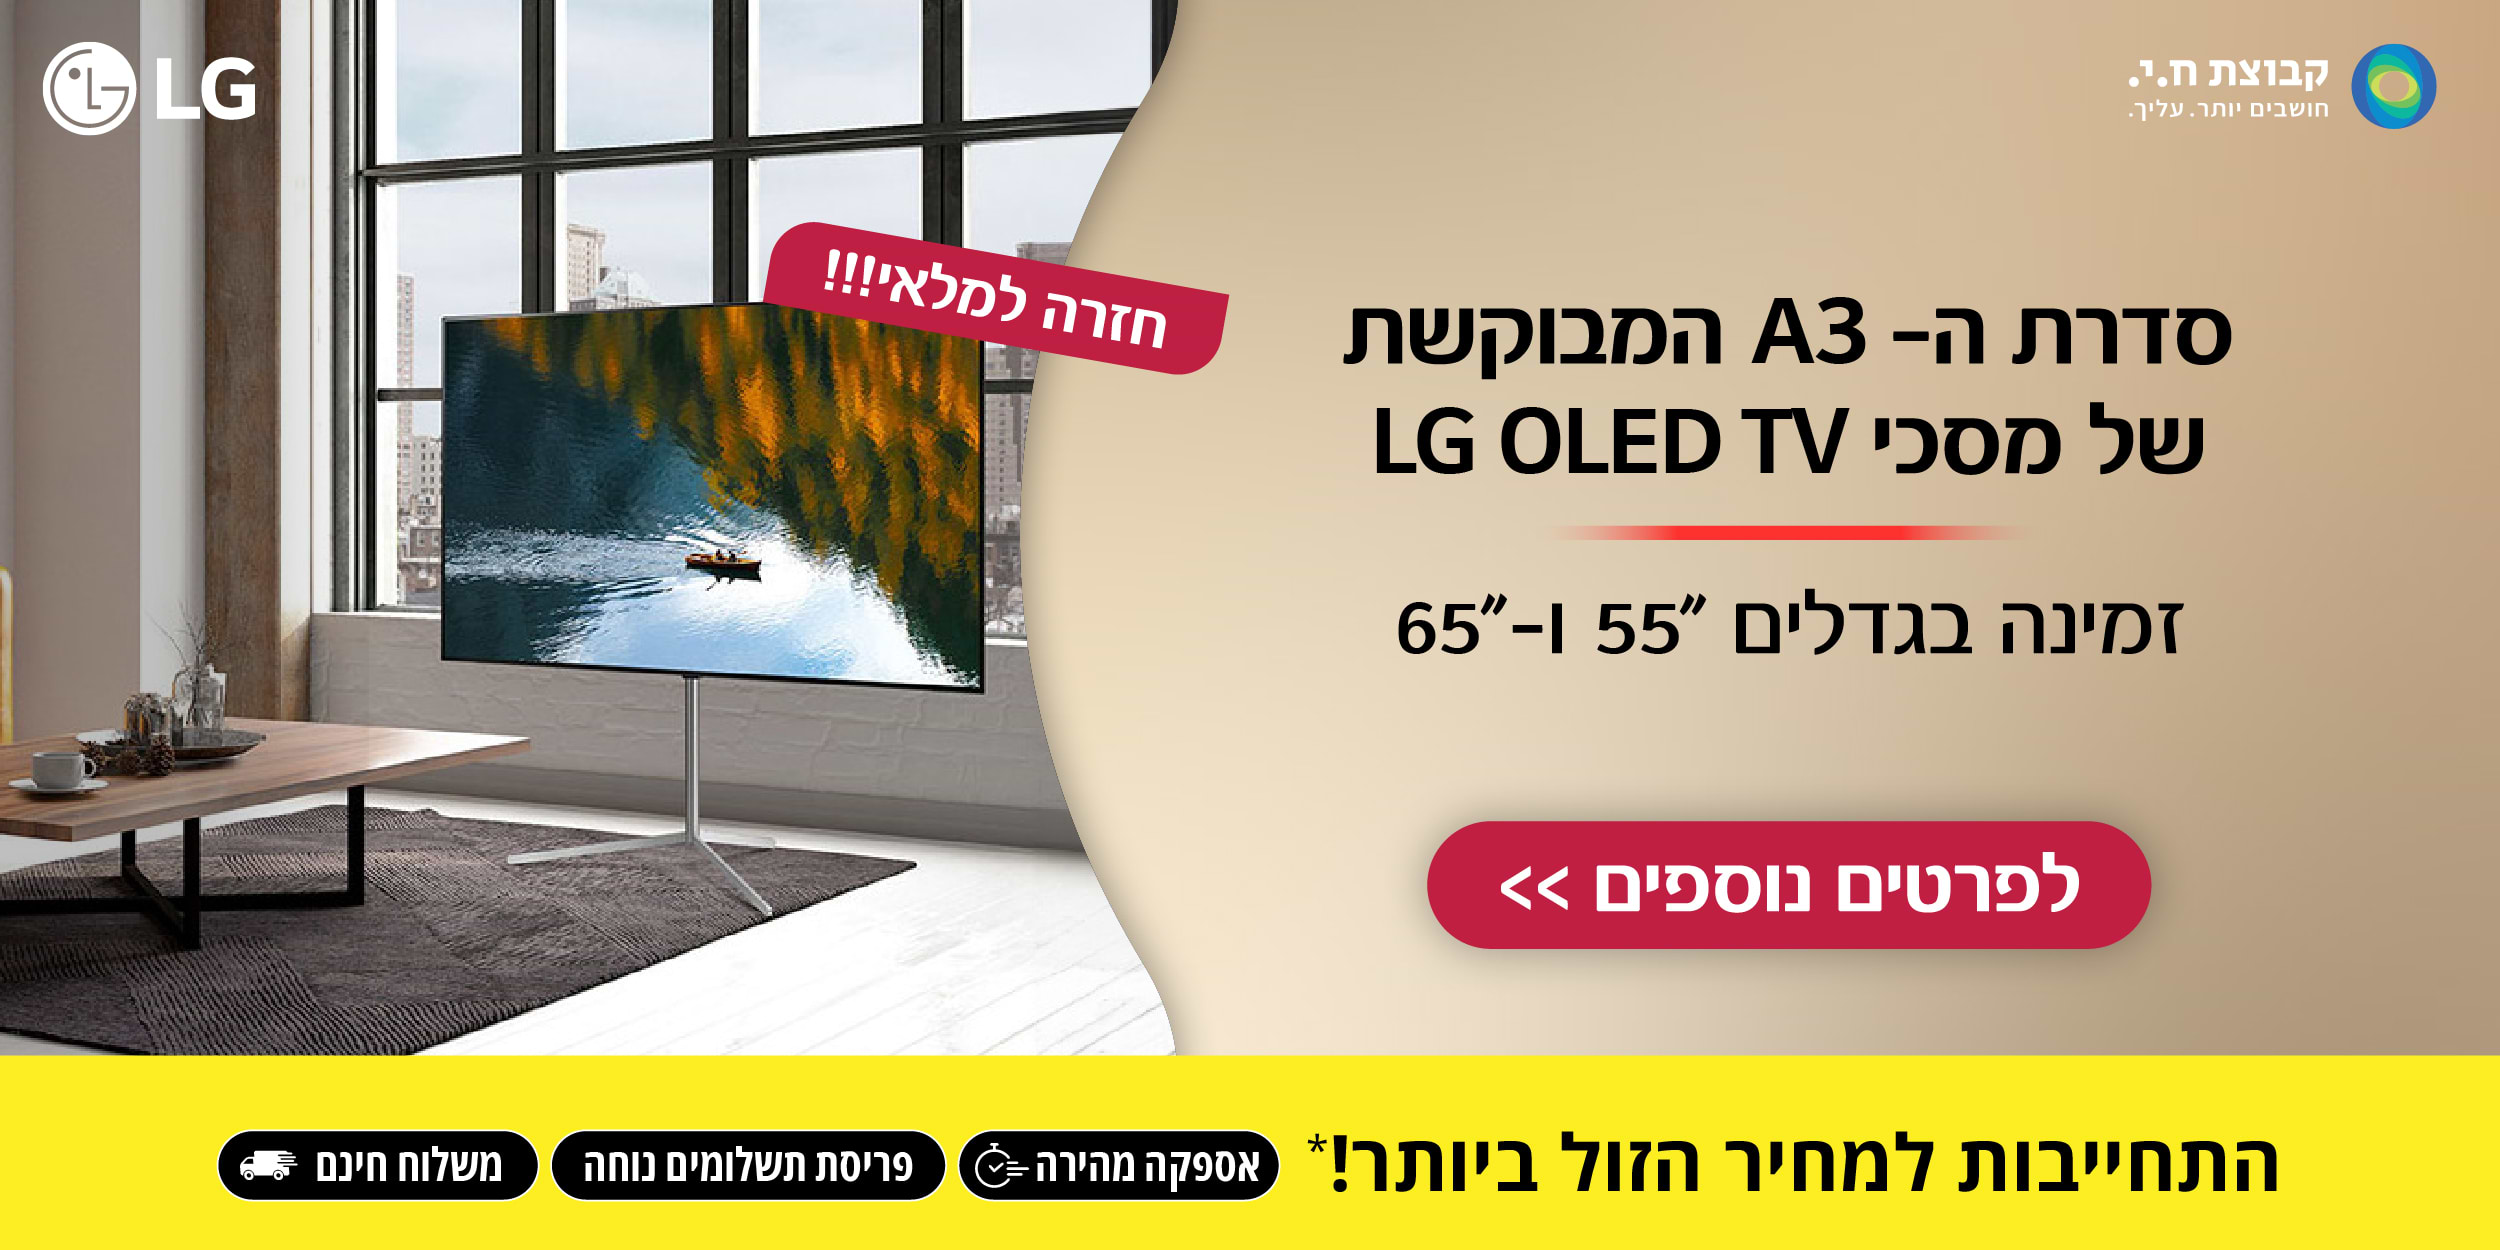 חזרה למלאי!! סדרת ה- A3 המבוקשת של מסכי LG OLED TV זמינה בגדלים 55